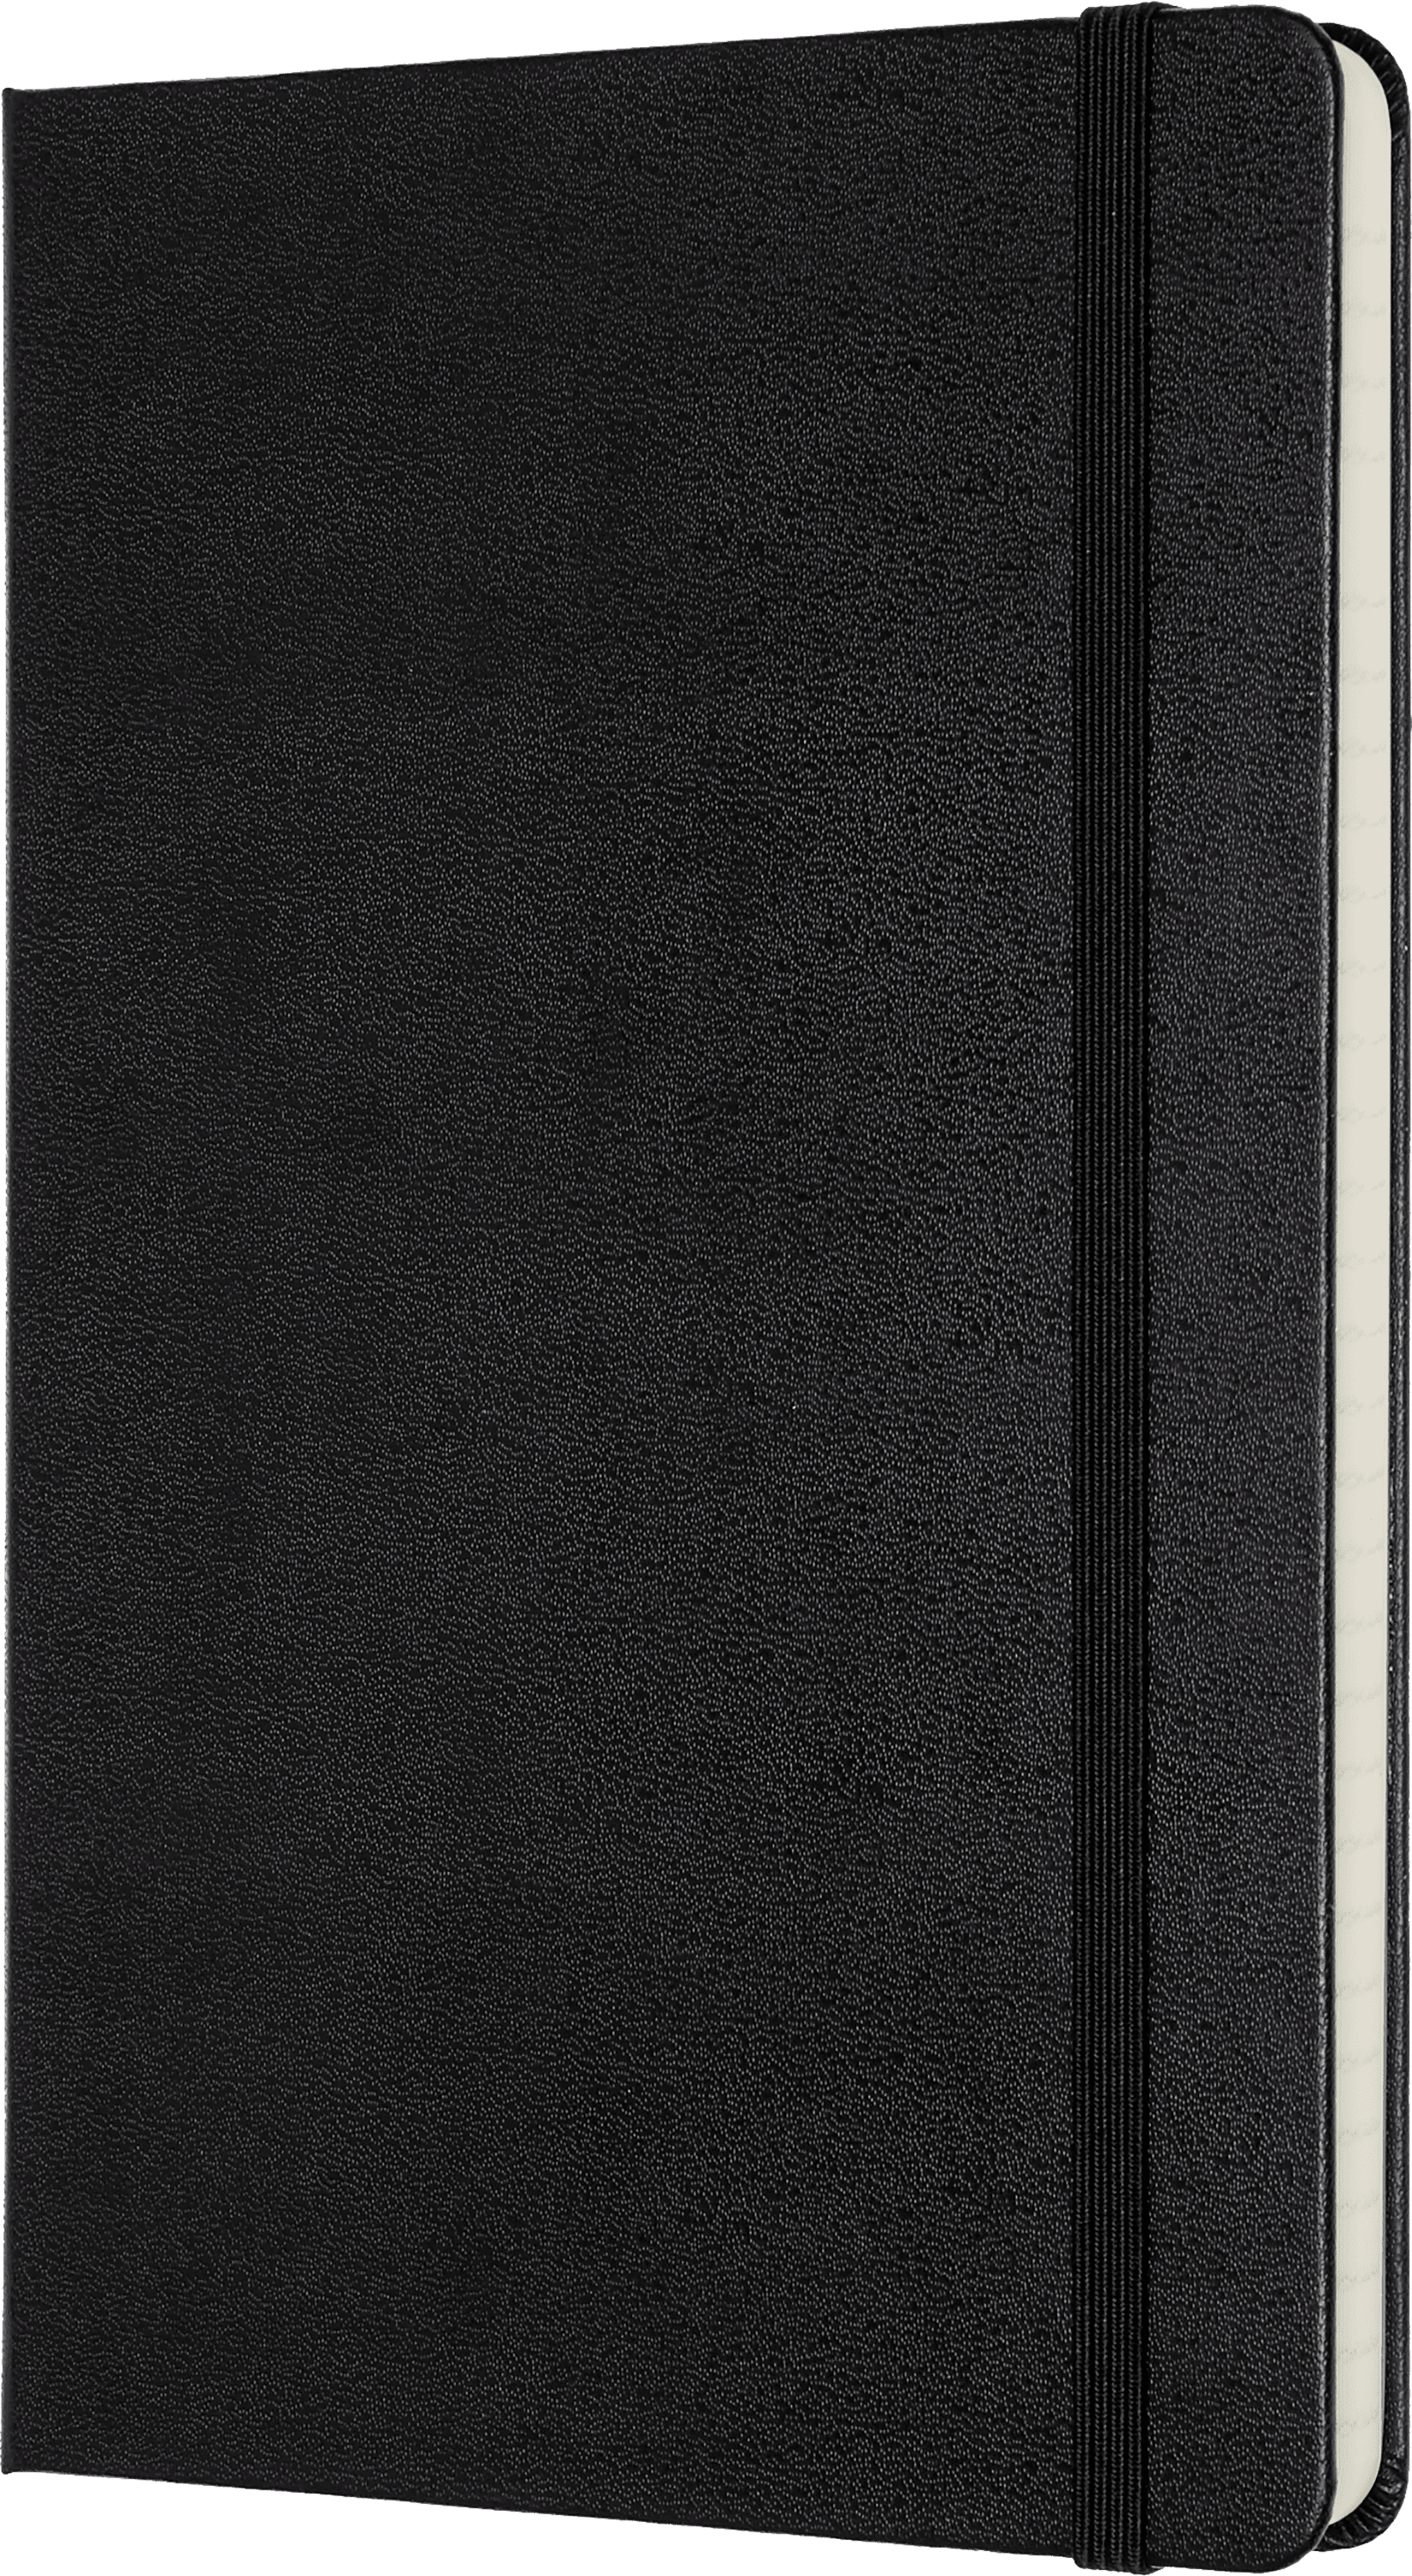 Couleur Noir 192 Pages Carnet de Bureau Agencement Organisé avec Liste de Tâches Amovible Couverture Rigide avec Fermeture Élastique Moleskine Carnet Pro Format A4 21 x 29.7 cm 